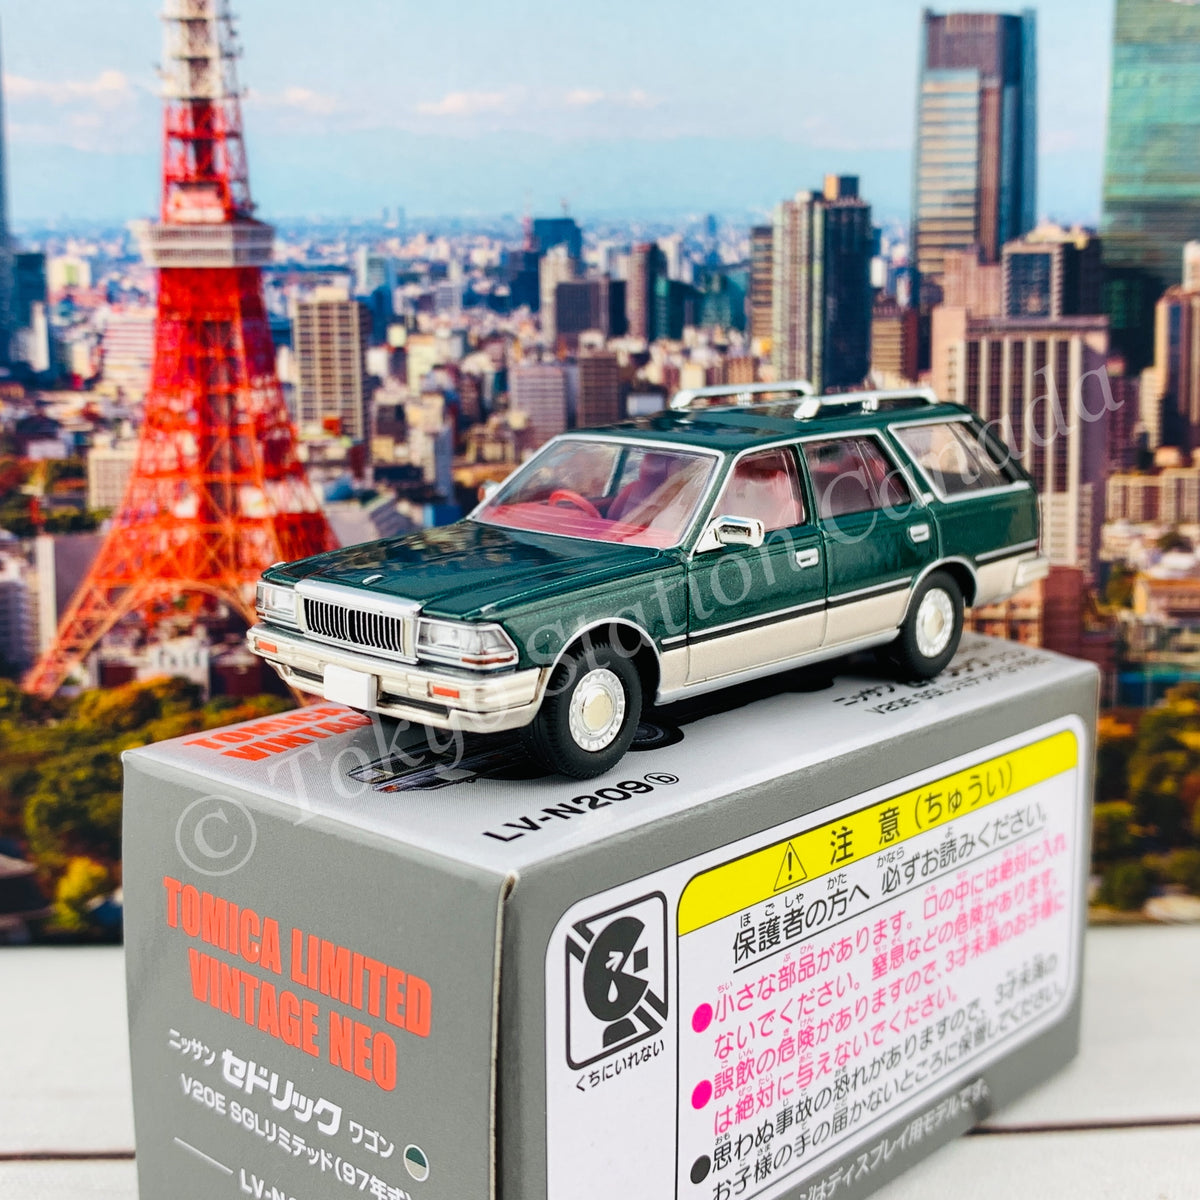 Tomytec Tomica Limited Vintage Neo 1/64 Nissan Cedric Wagon V20E SGL L –  Tokyo Station